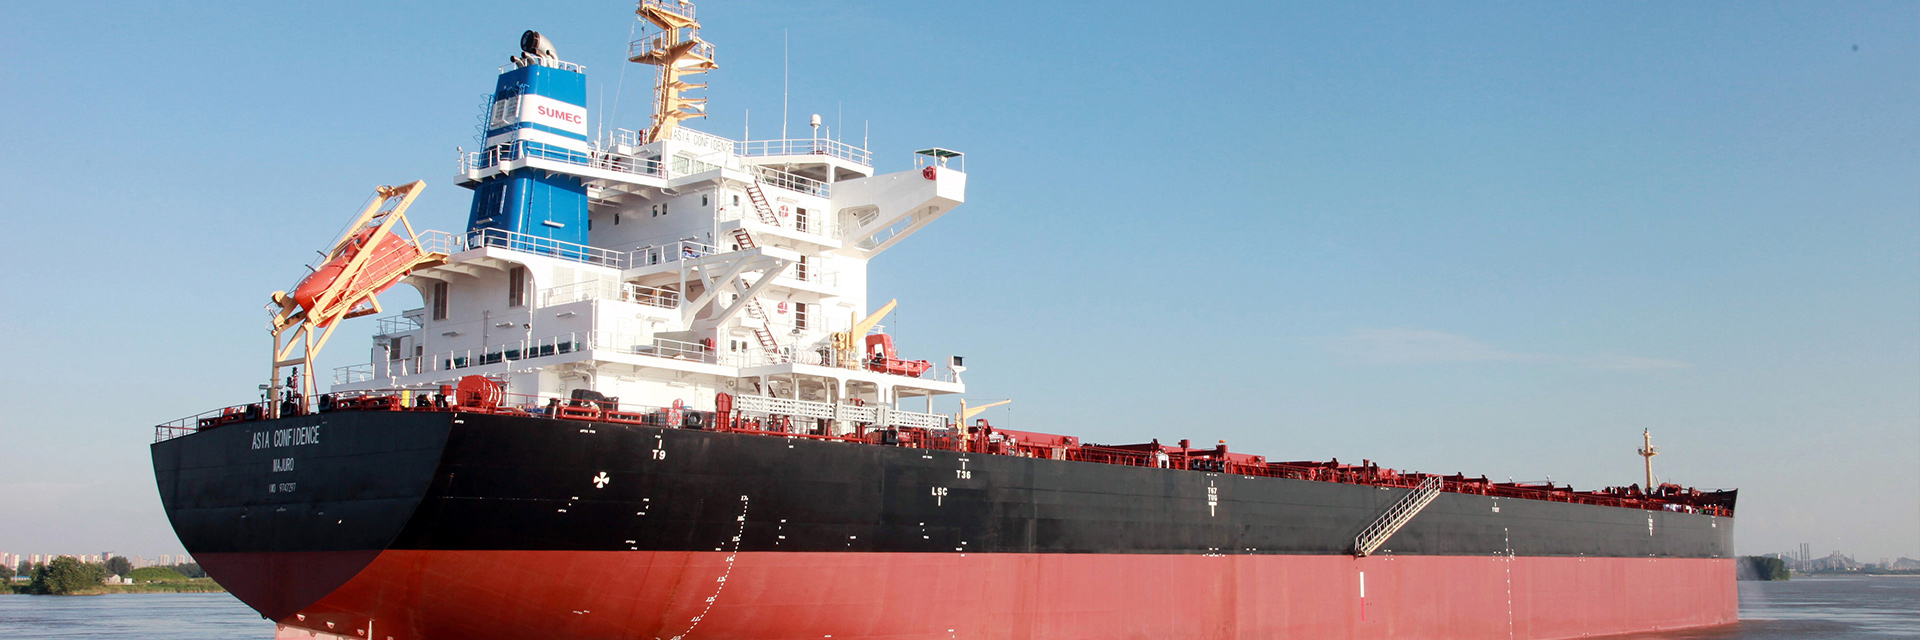 Proporcionar soluciones sistemáticas para el transporte y proyectos offshore